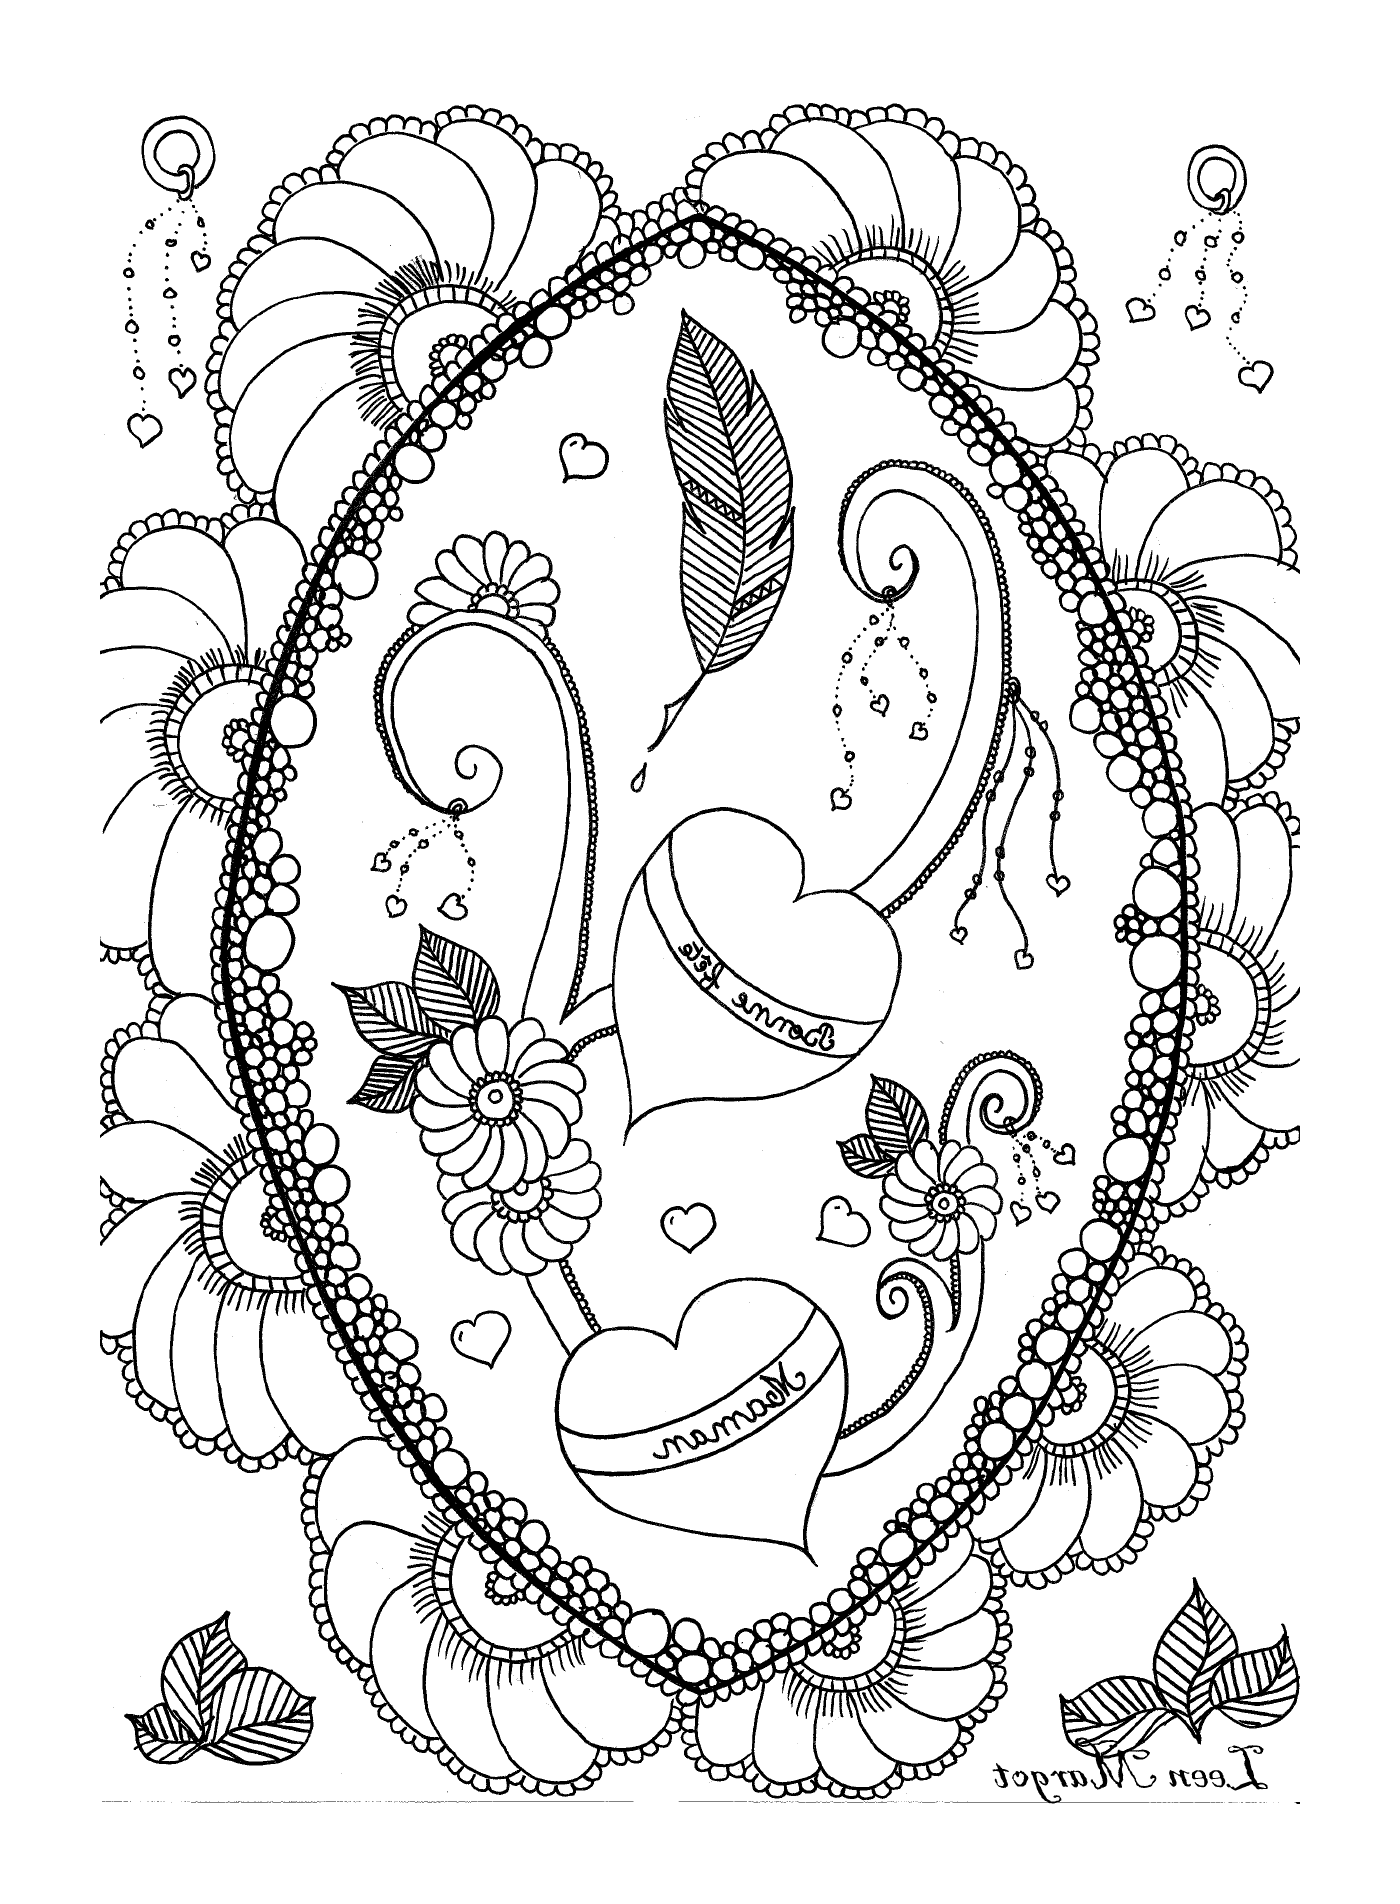  Овальная рама с двумя сердцами, пером и цветами 